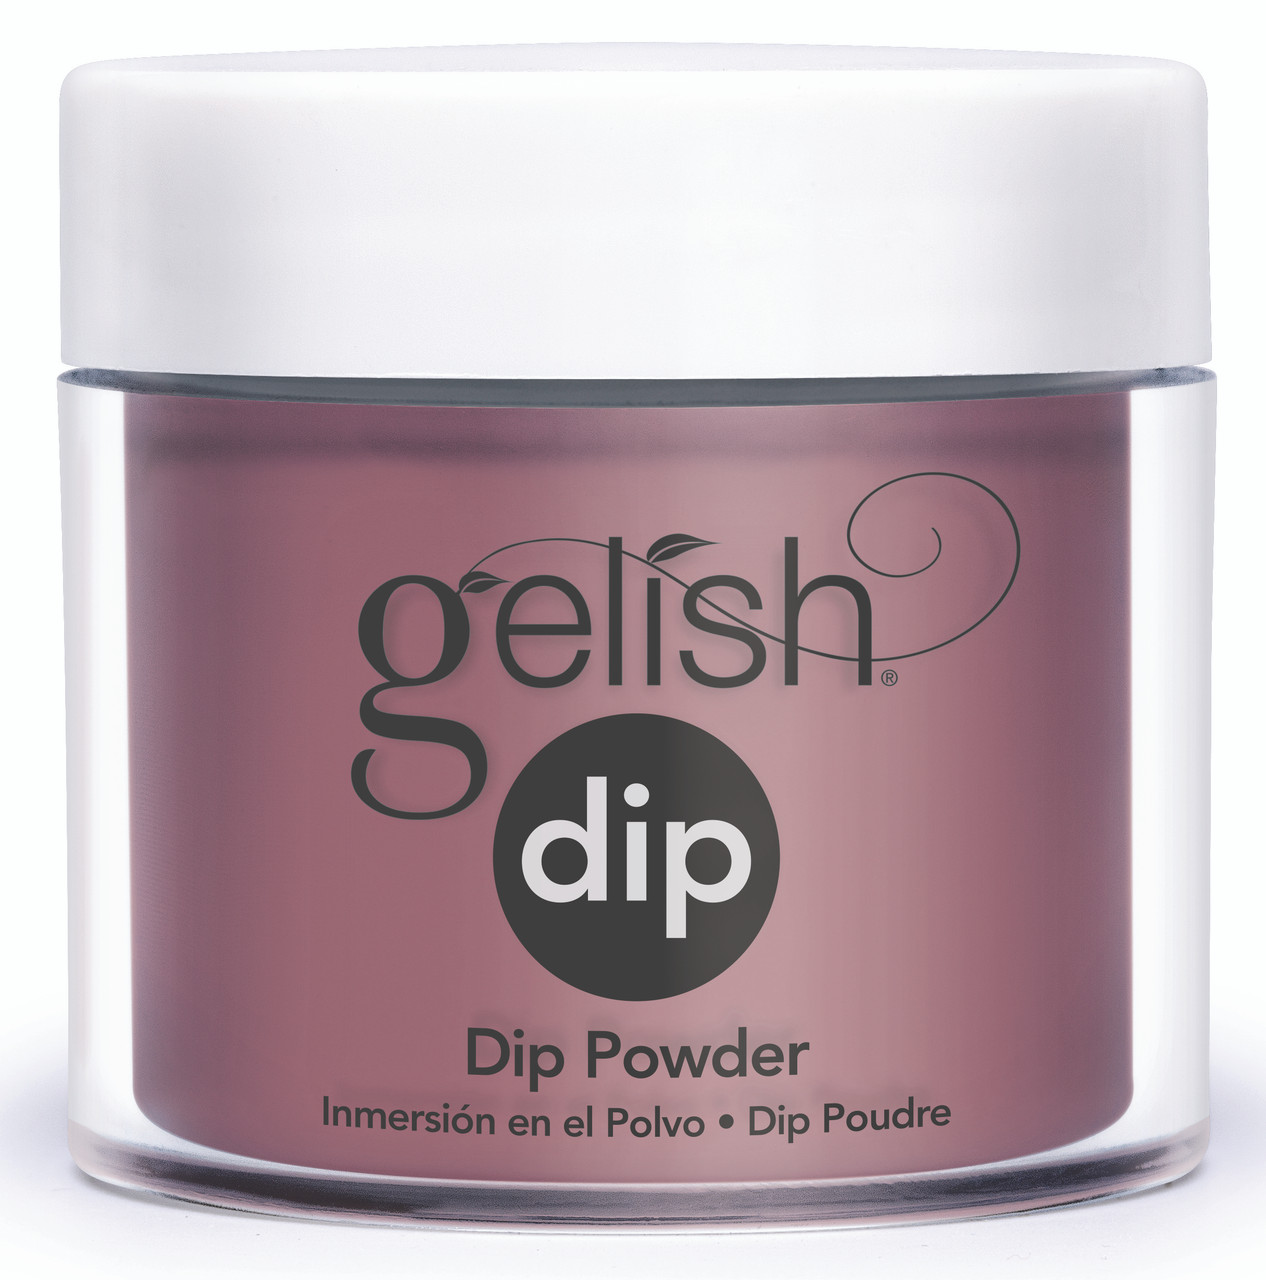 Gelish Dip Powder Lust At First Sight - 0.8 oz / 23 g